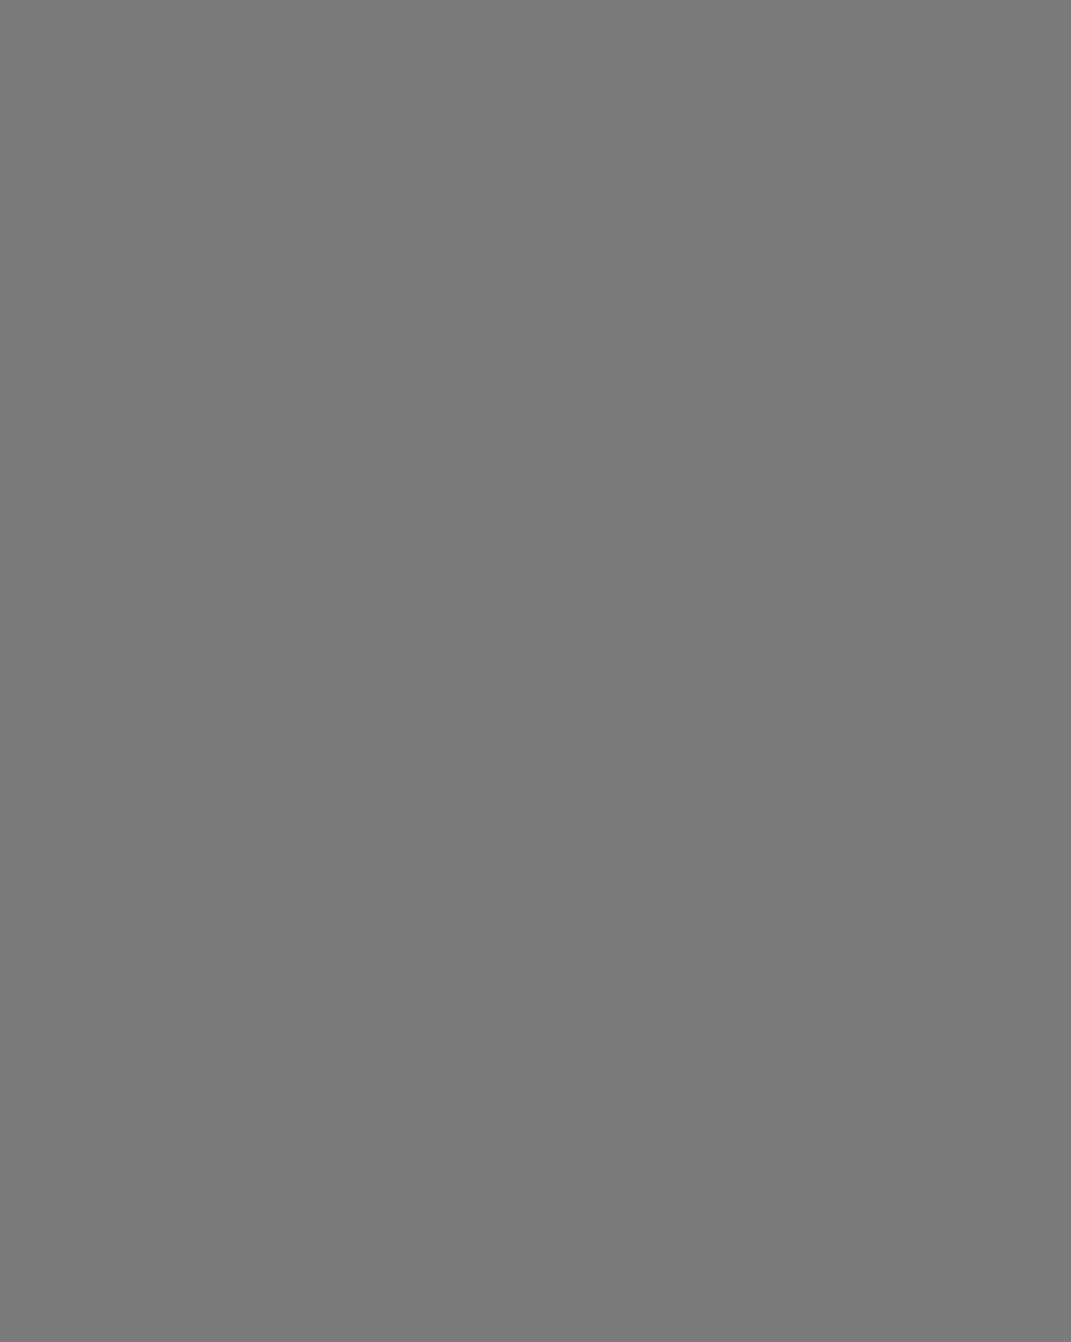 Михаил Салтыков-Щедрин. XIX век. Фотография: Государственный музей истории российской литературы имени В.И. Даля (Государственный литературный музей), Москва